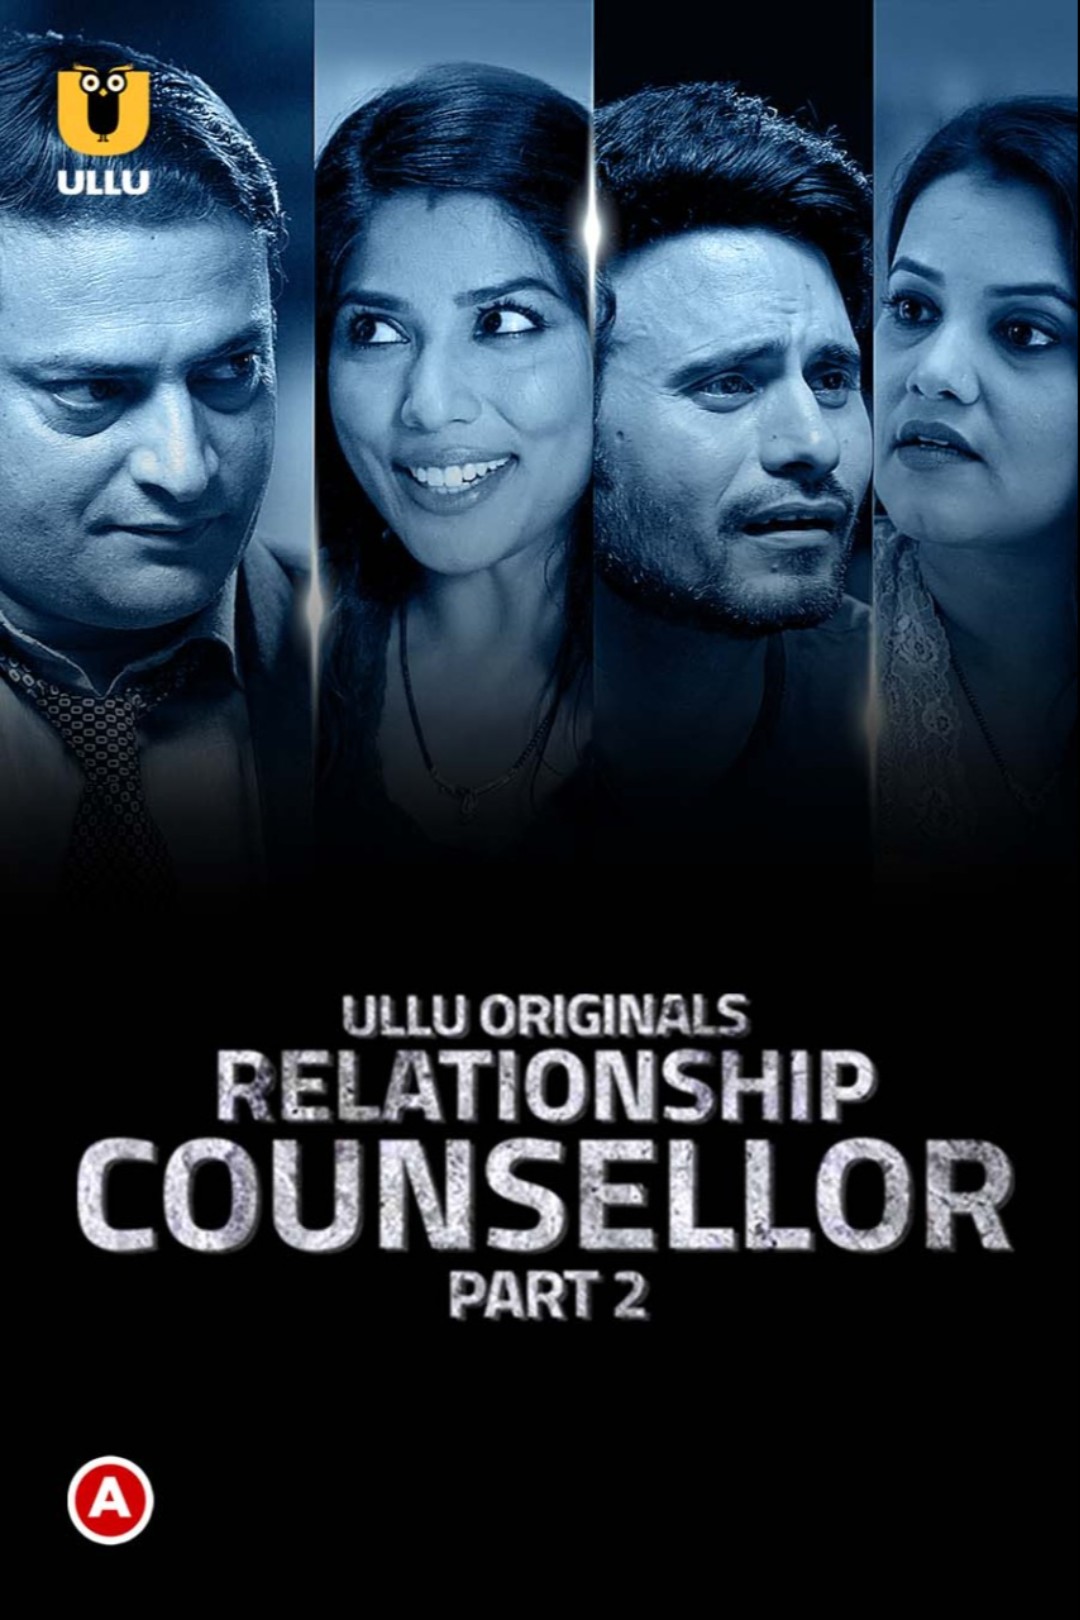 Relationship Counsellor Part 2 (2021) 720p HDRIp Season 1 Ullu Originals Webseries